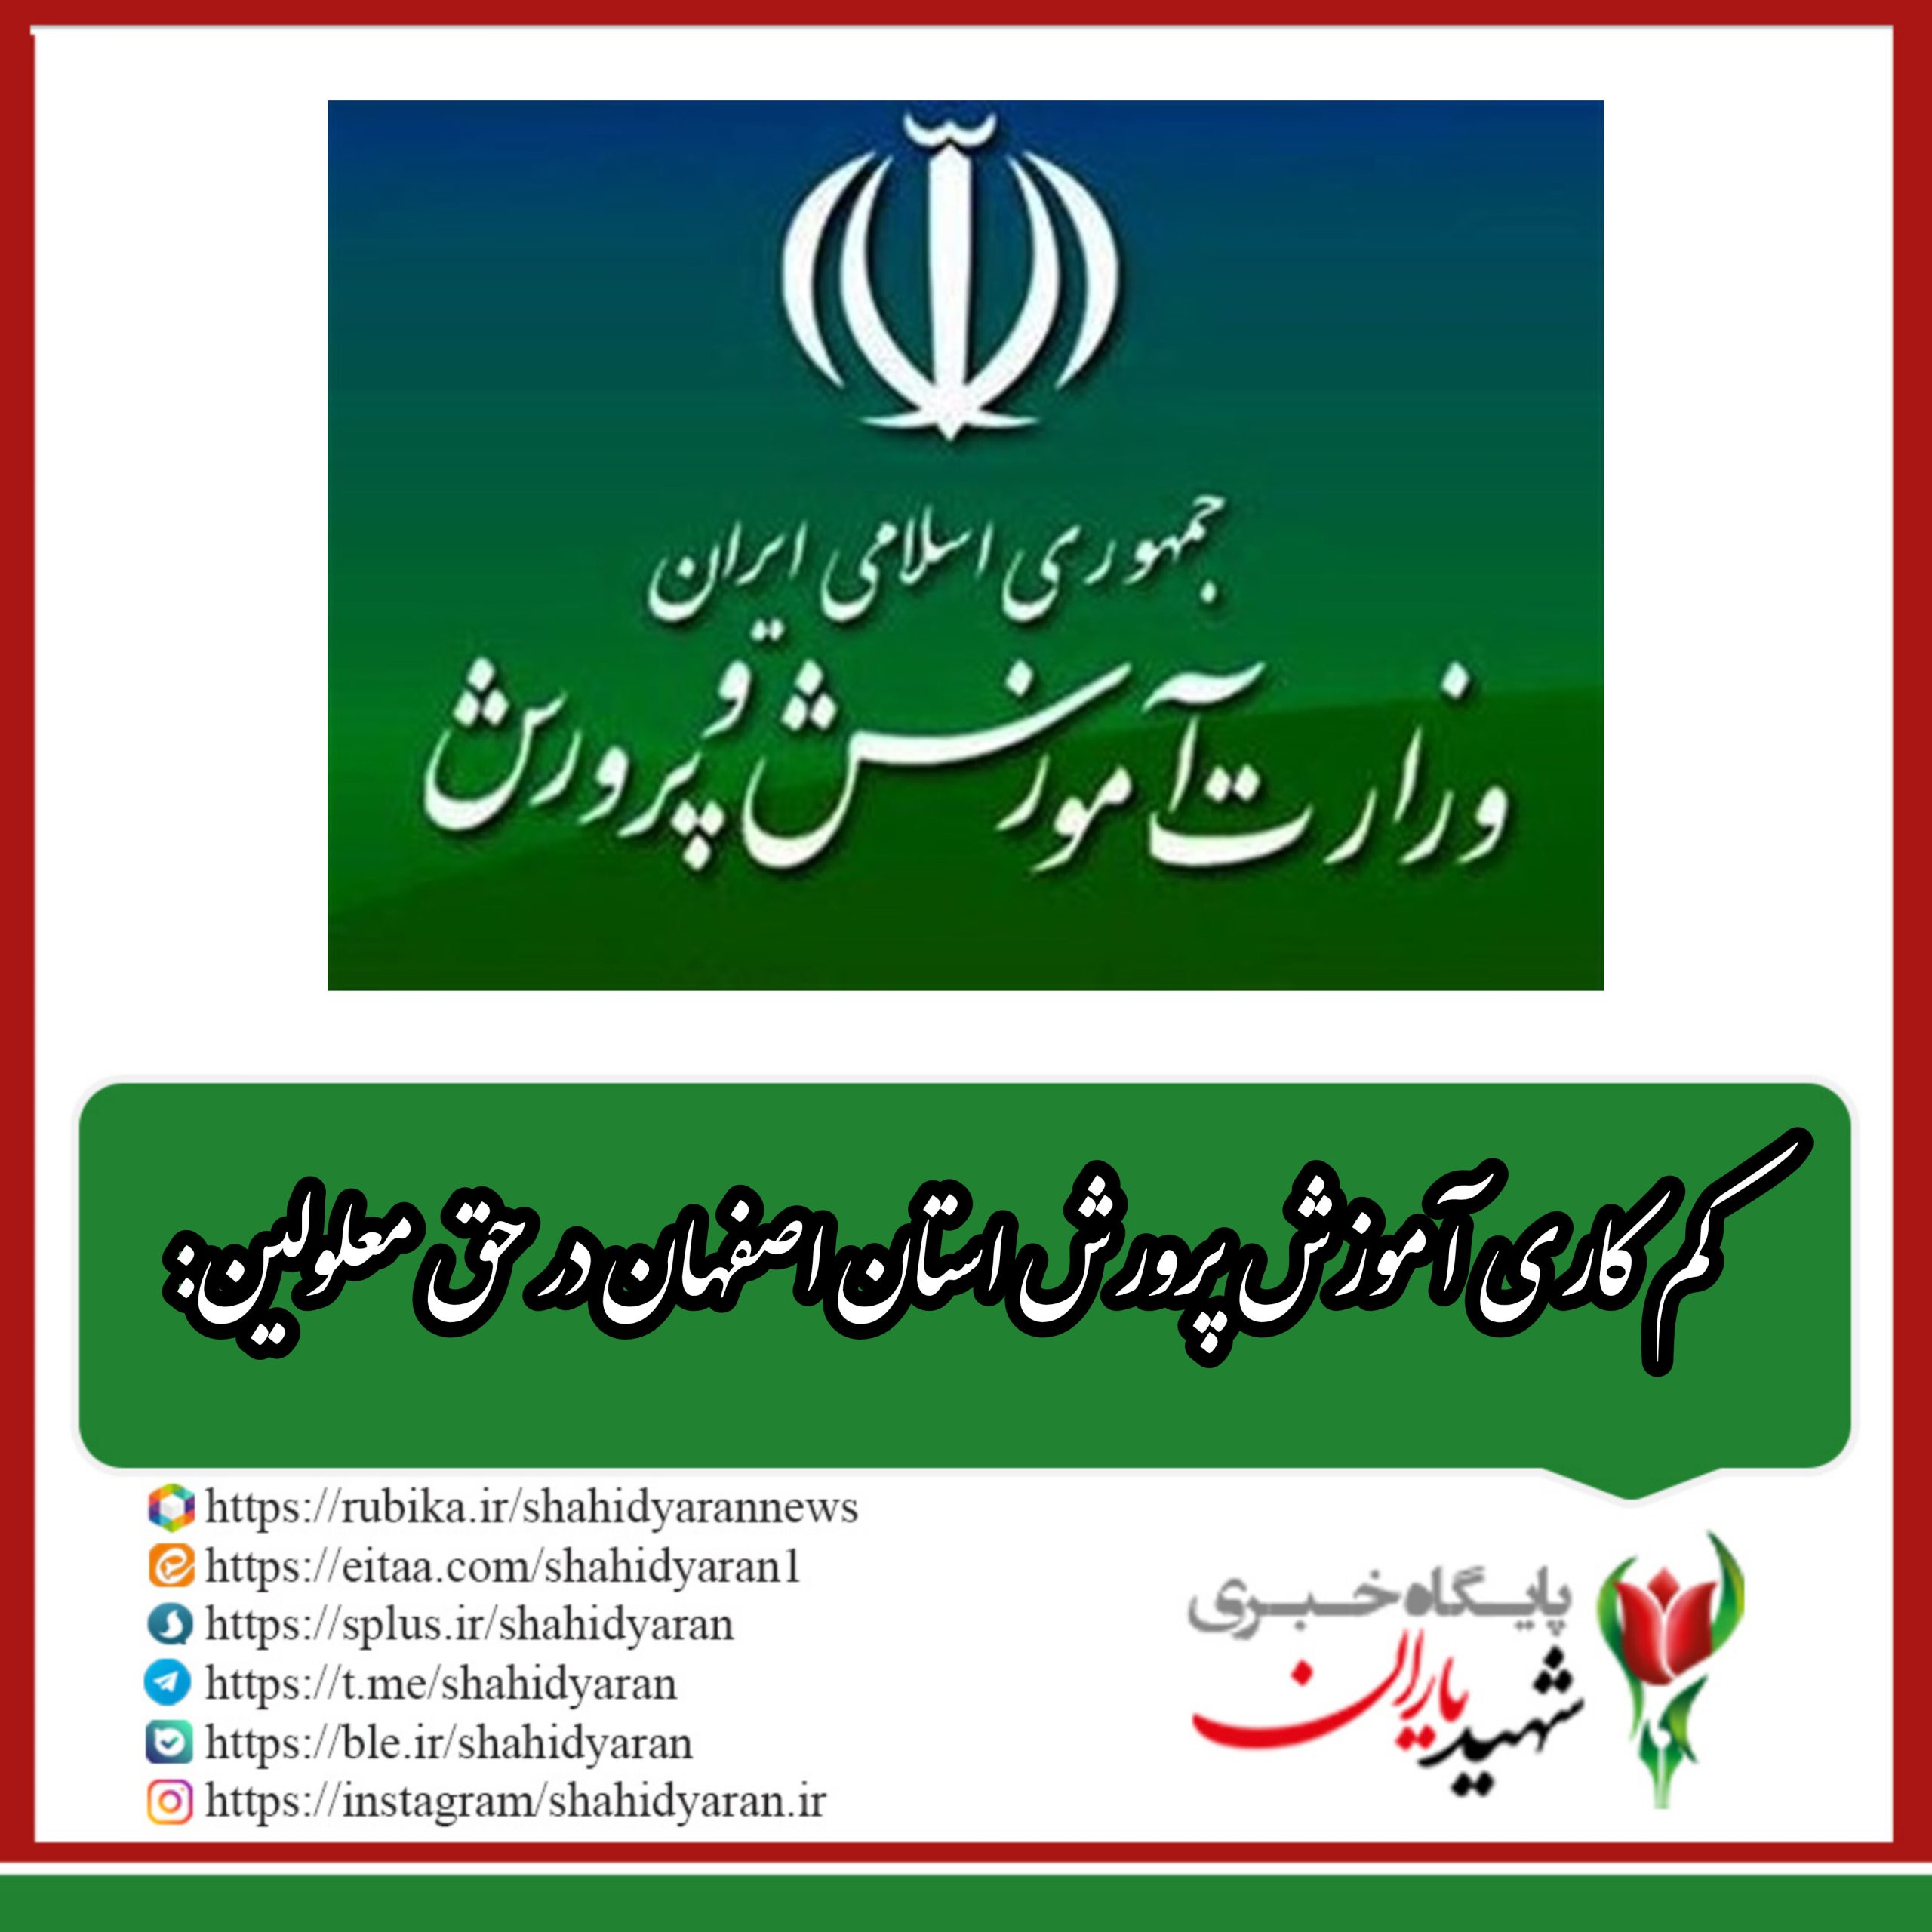 کم کاری آموزش پرورش استان اصفهان در حق معلولین: